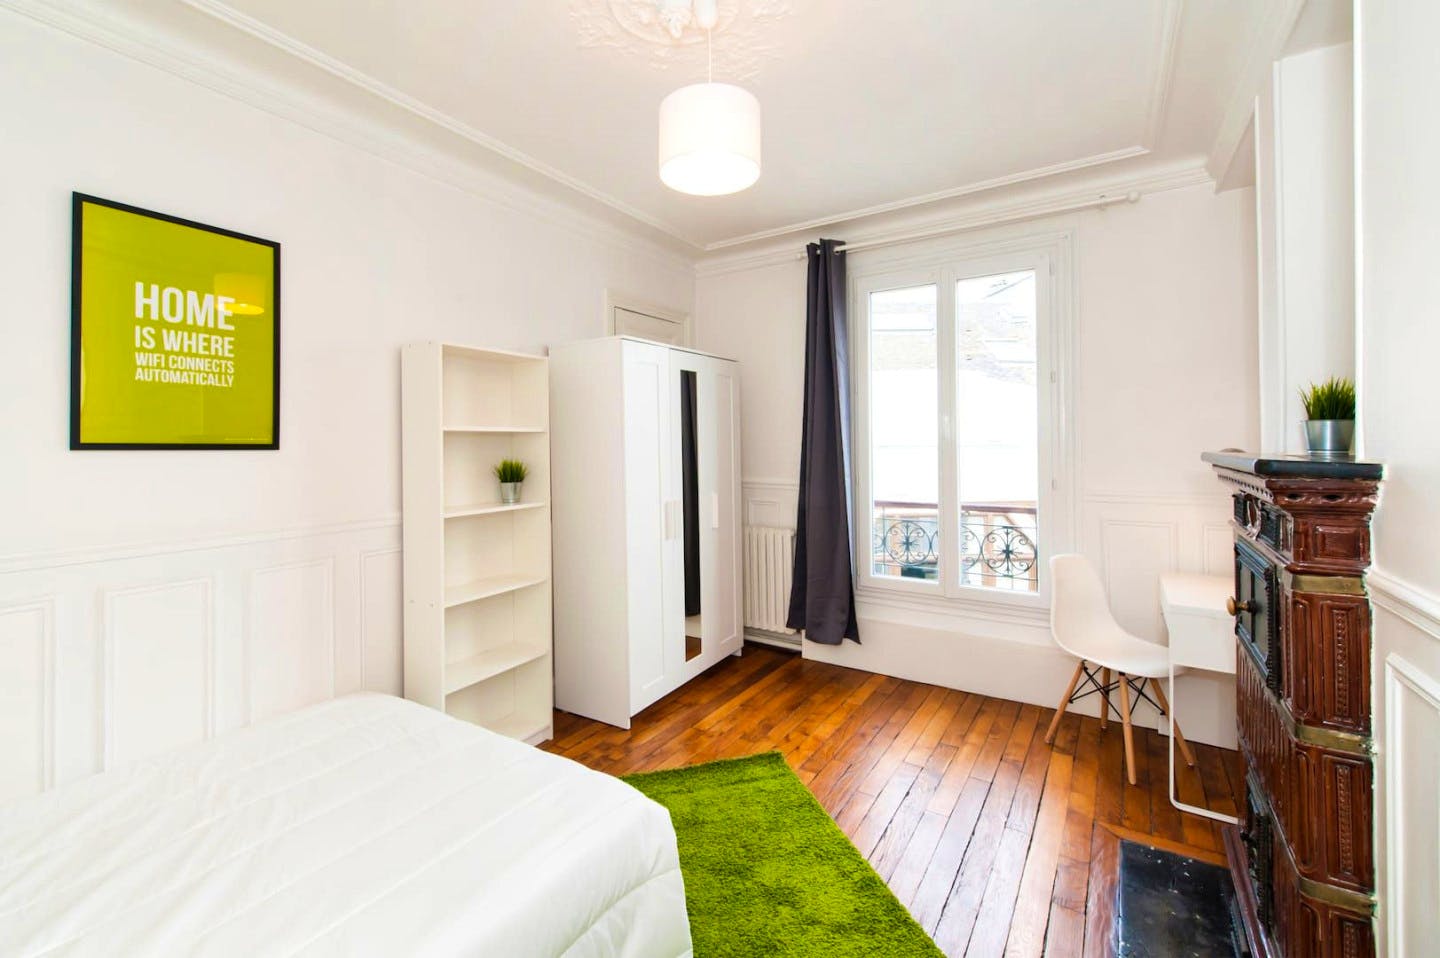 4-Bed Apartment on Rue de l'Aqueduc